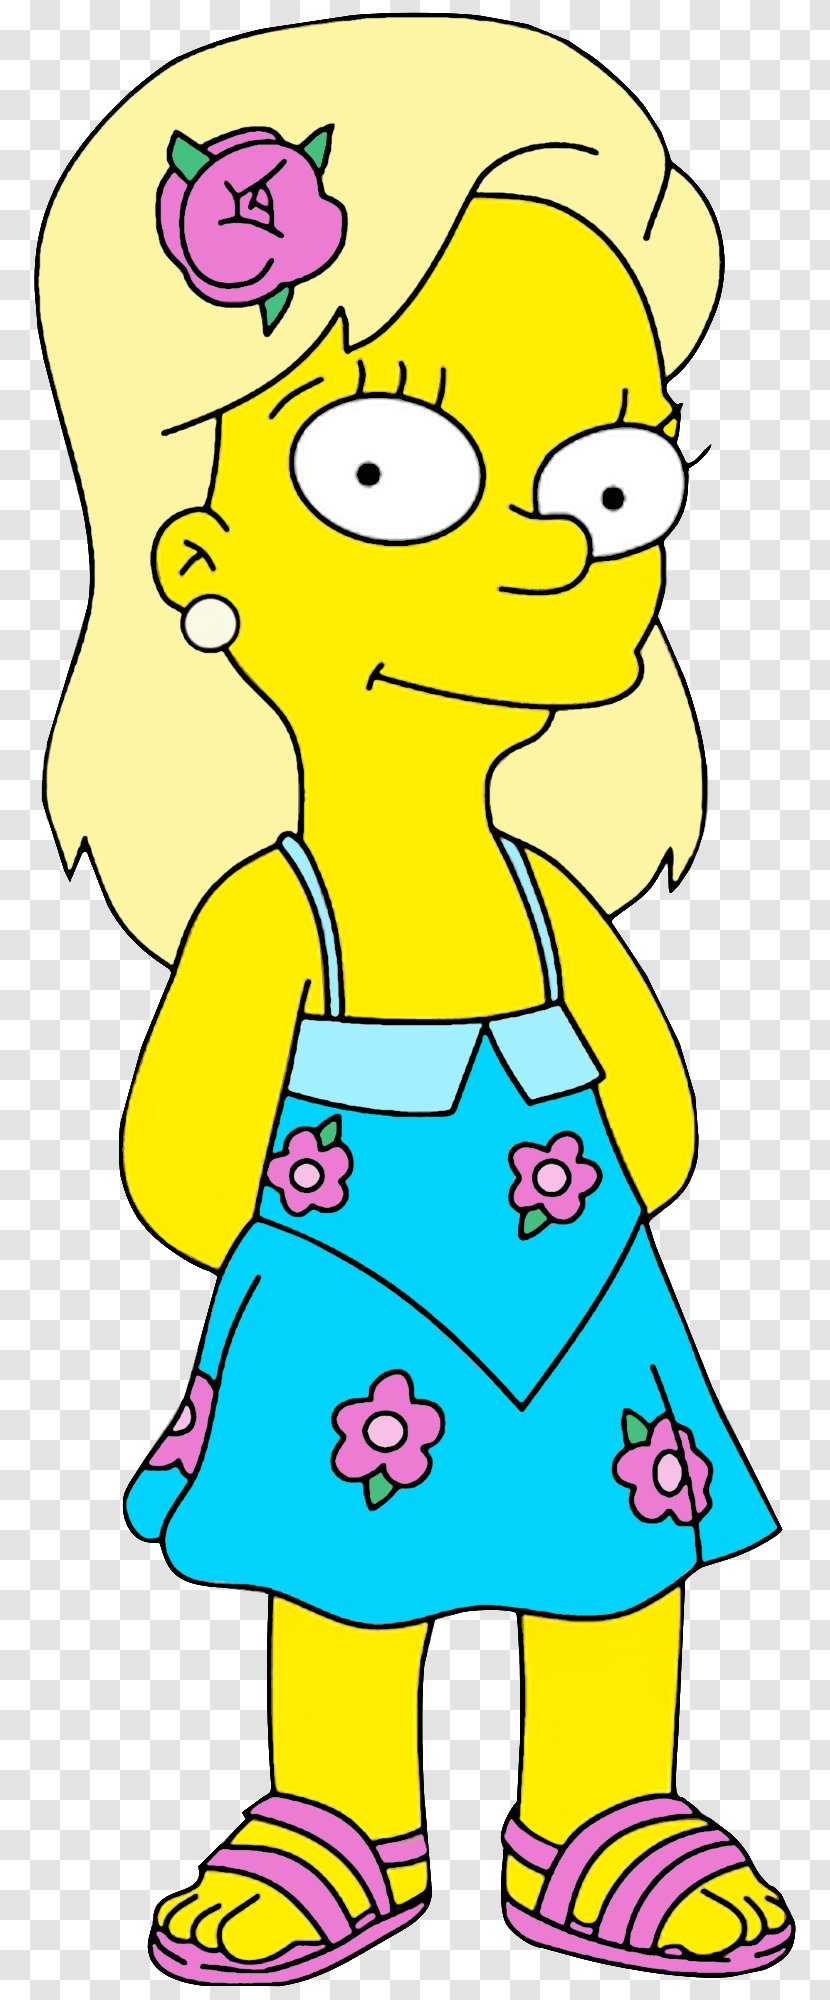 Rainier Wolfcastle Mr. Burns Bart Simpson Milhouse Van Houten Lisa - The Simpsons Movie Transparent PNG